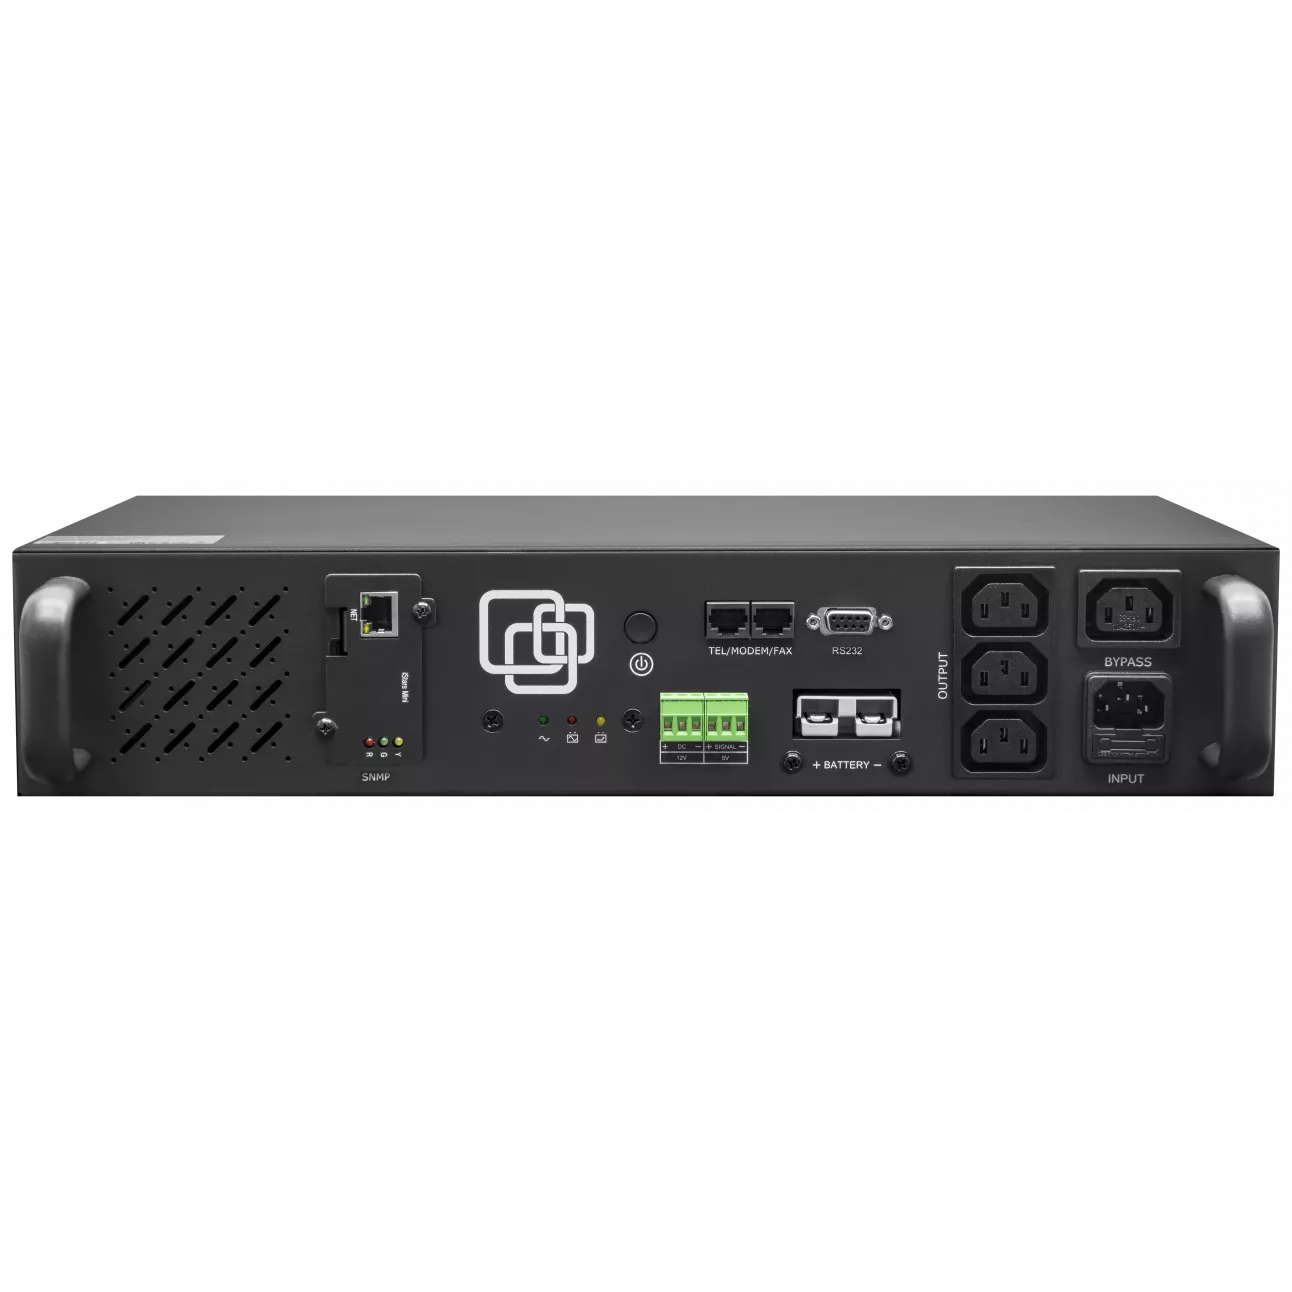 ИБП SNR UPS-LIRM-500-X-SNMP, 500 VA, 300 Вт, IEC, розеток - 4, USB, черный (SNR-UPS-LIRM-500-X-SNMP) (без аккумуляторов)